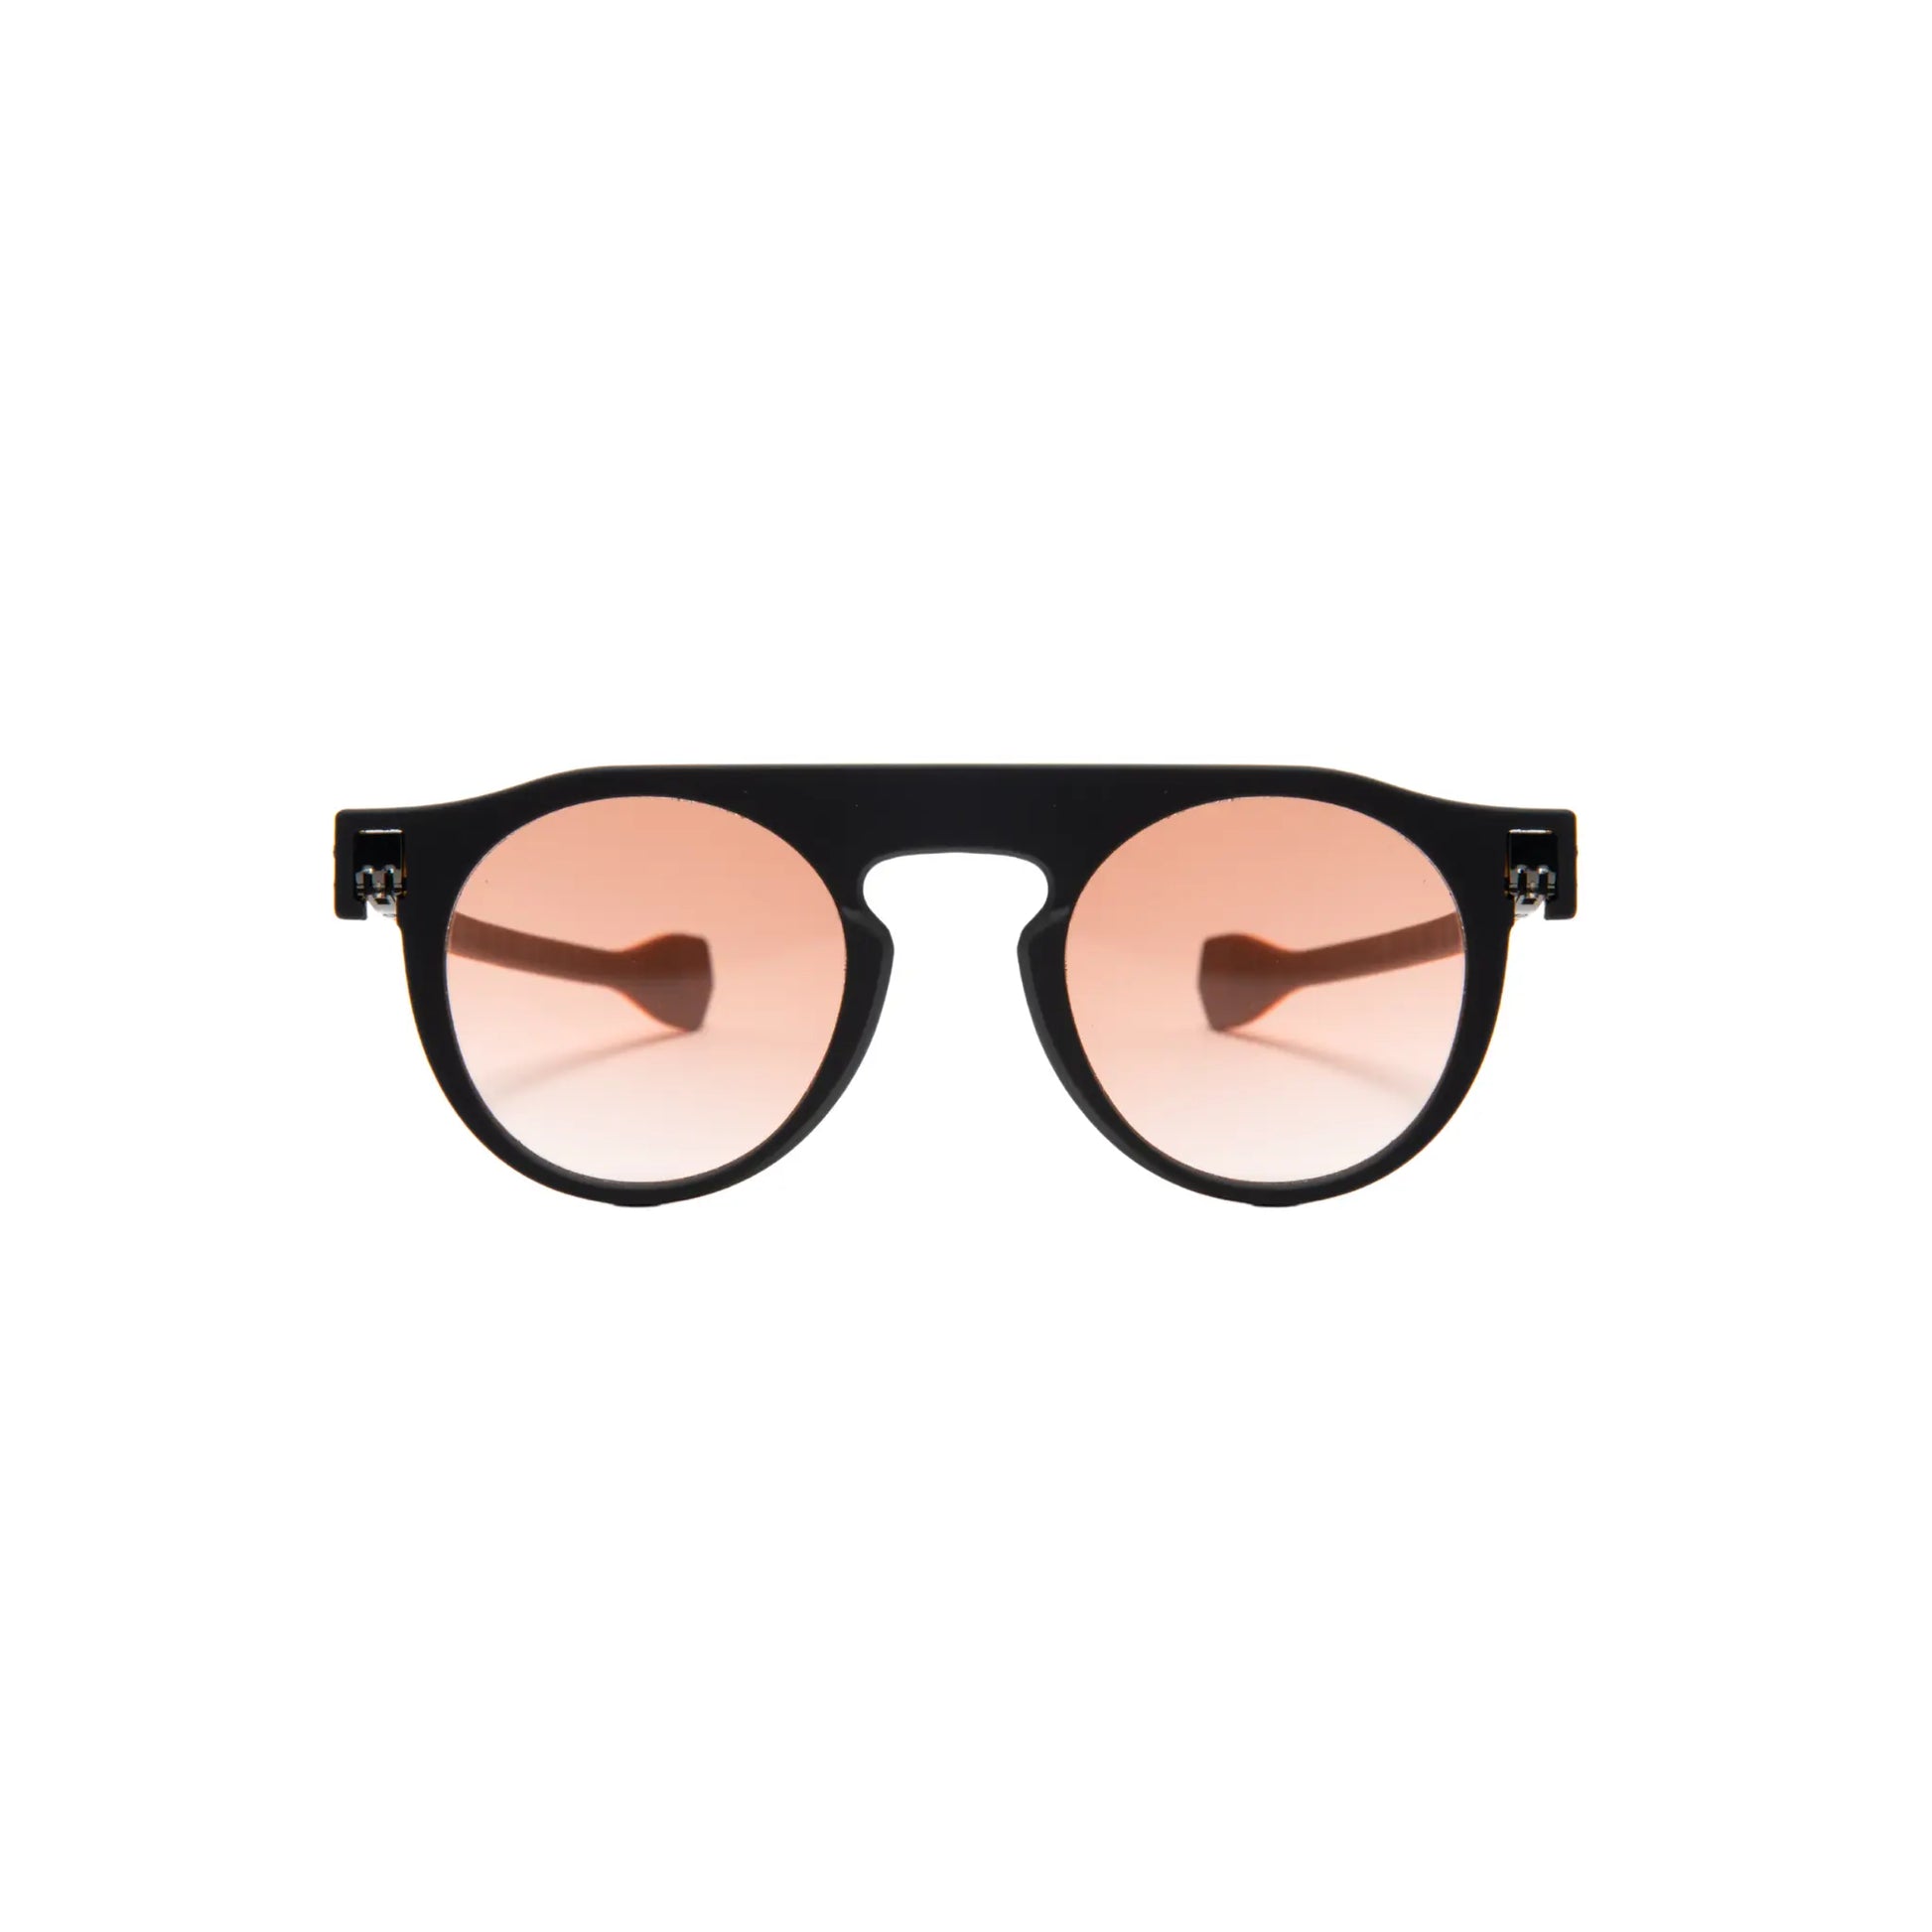 Reverso sunglasses Havana/black & orange reversible & ultra light front view 1